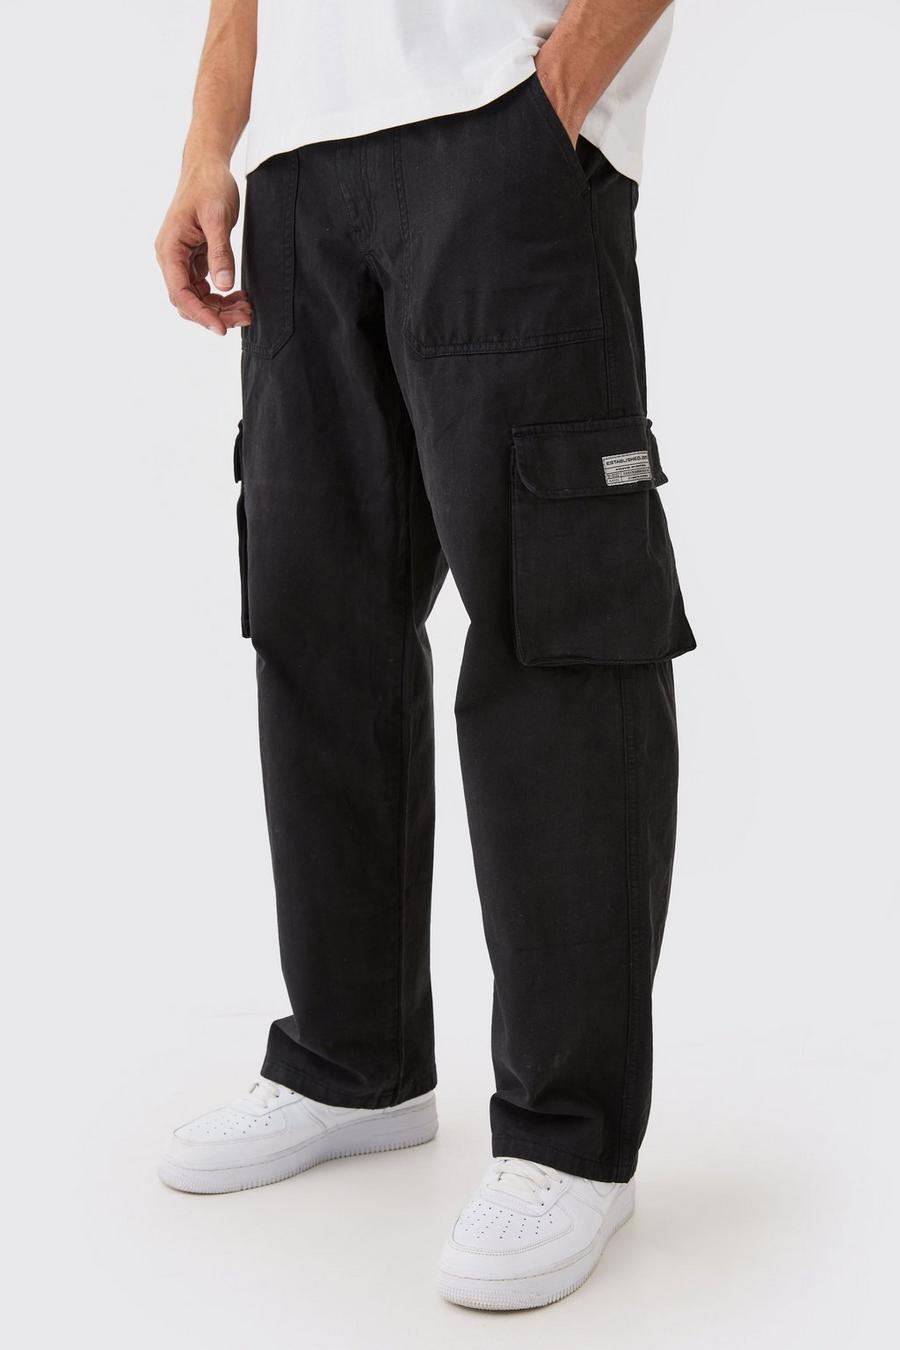 Pantaloni Cargo con vita fissa, zip ed etichetta in tessuto, Black